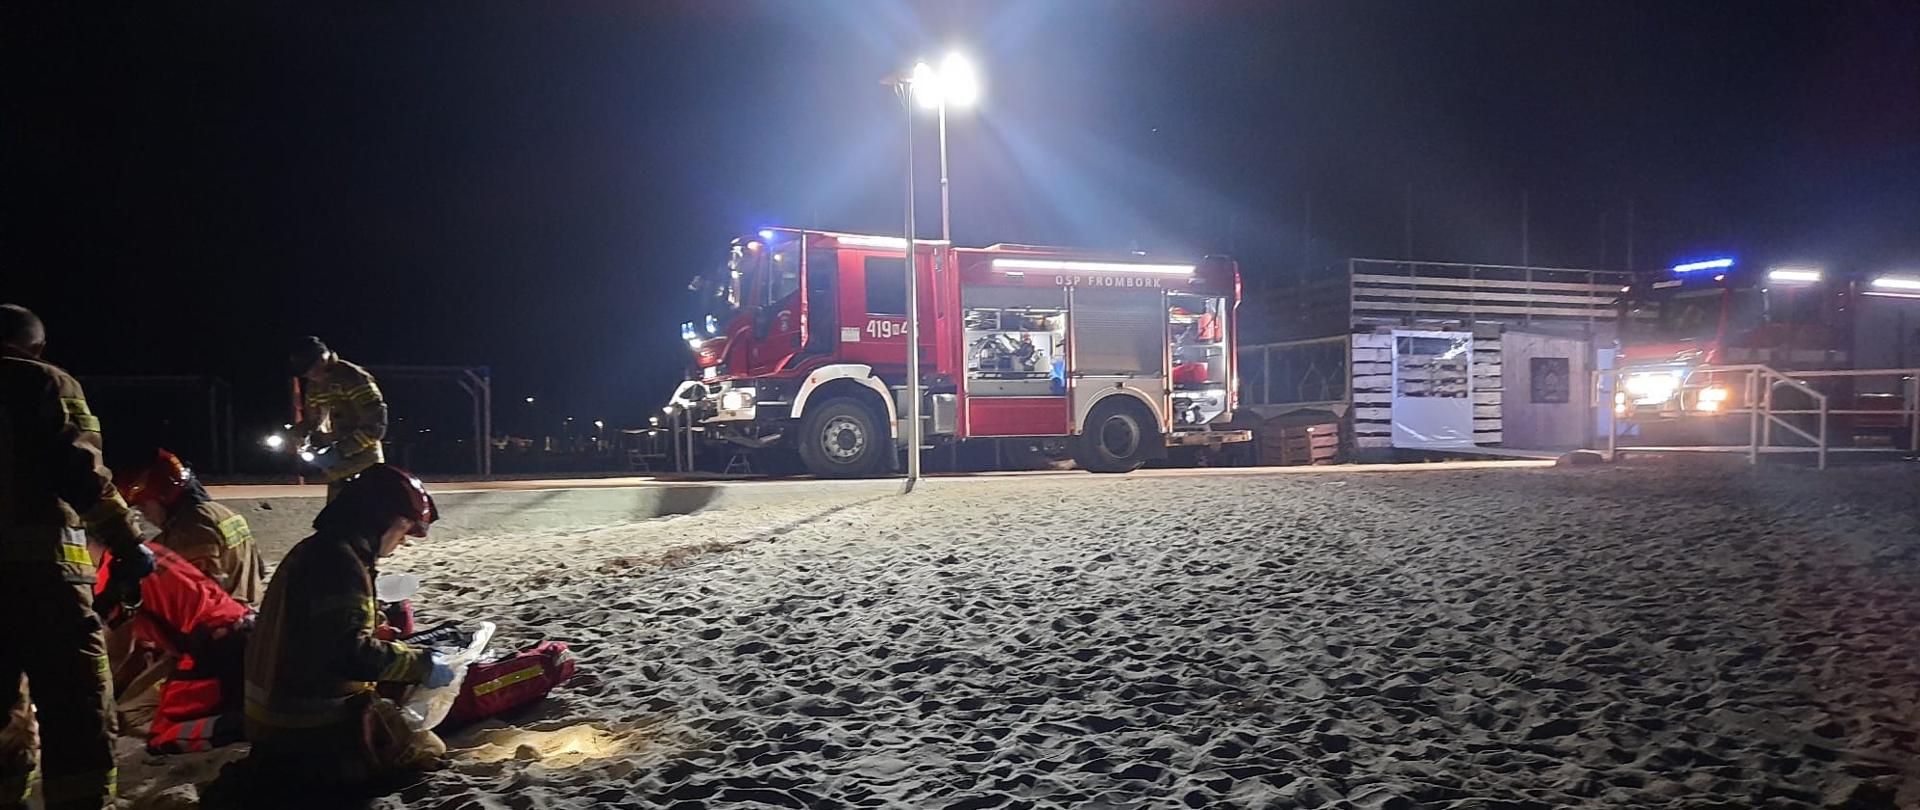 Zdjęcie zrobione nocą. Plaża, teren oświetlany przez samochody strażackie, na pisku grupa strażaków.